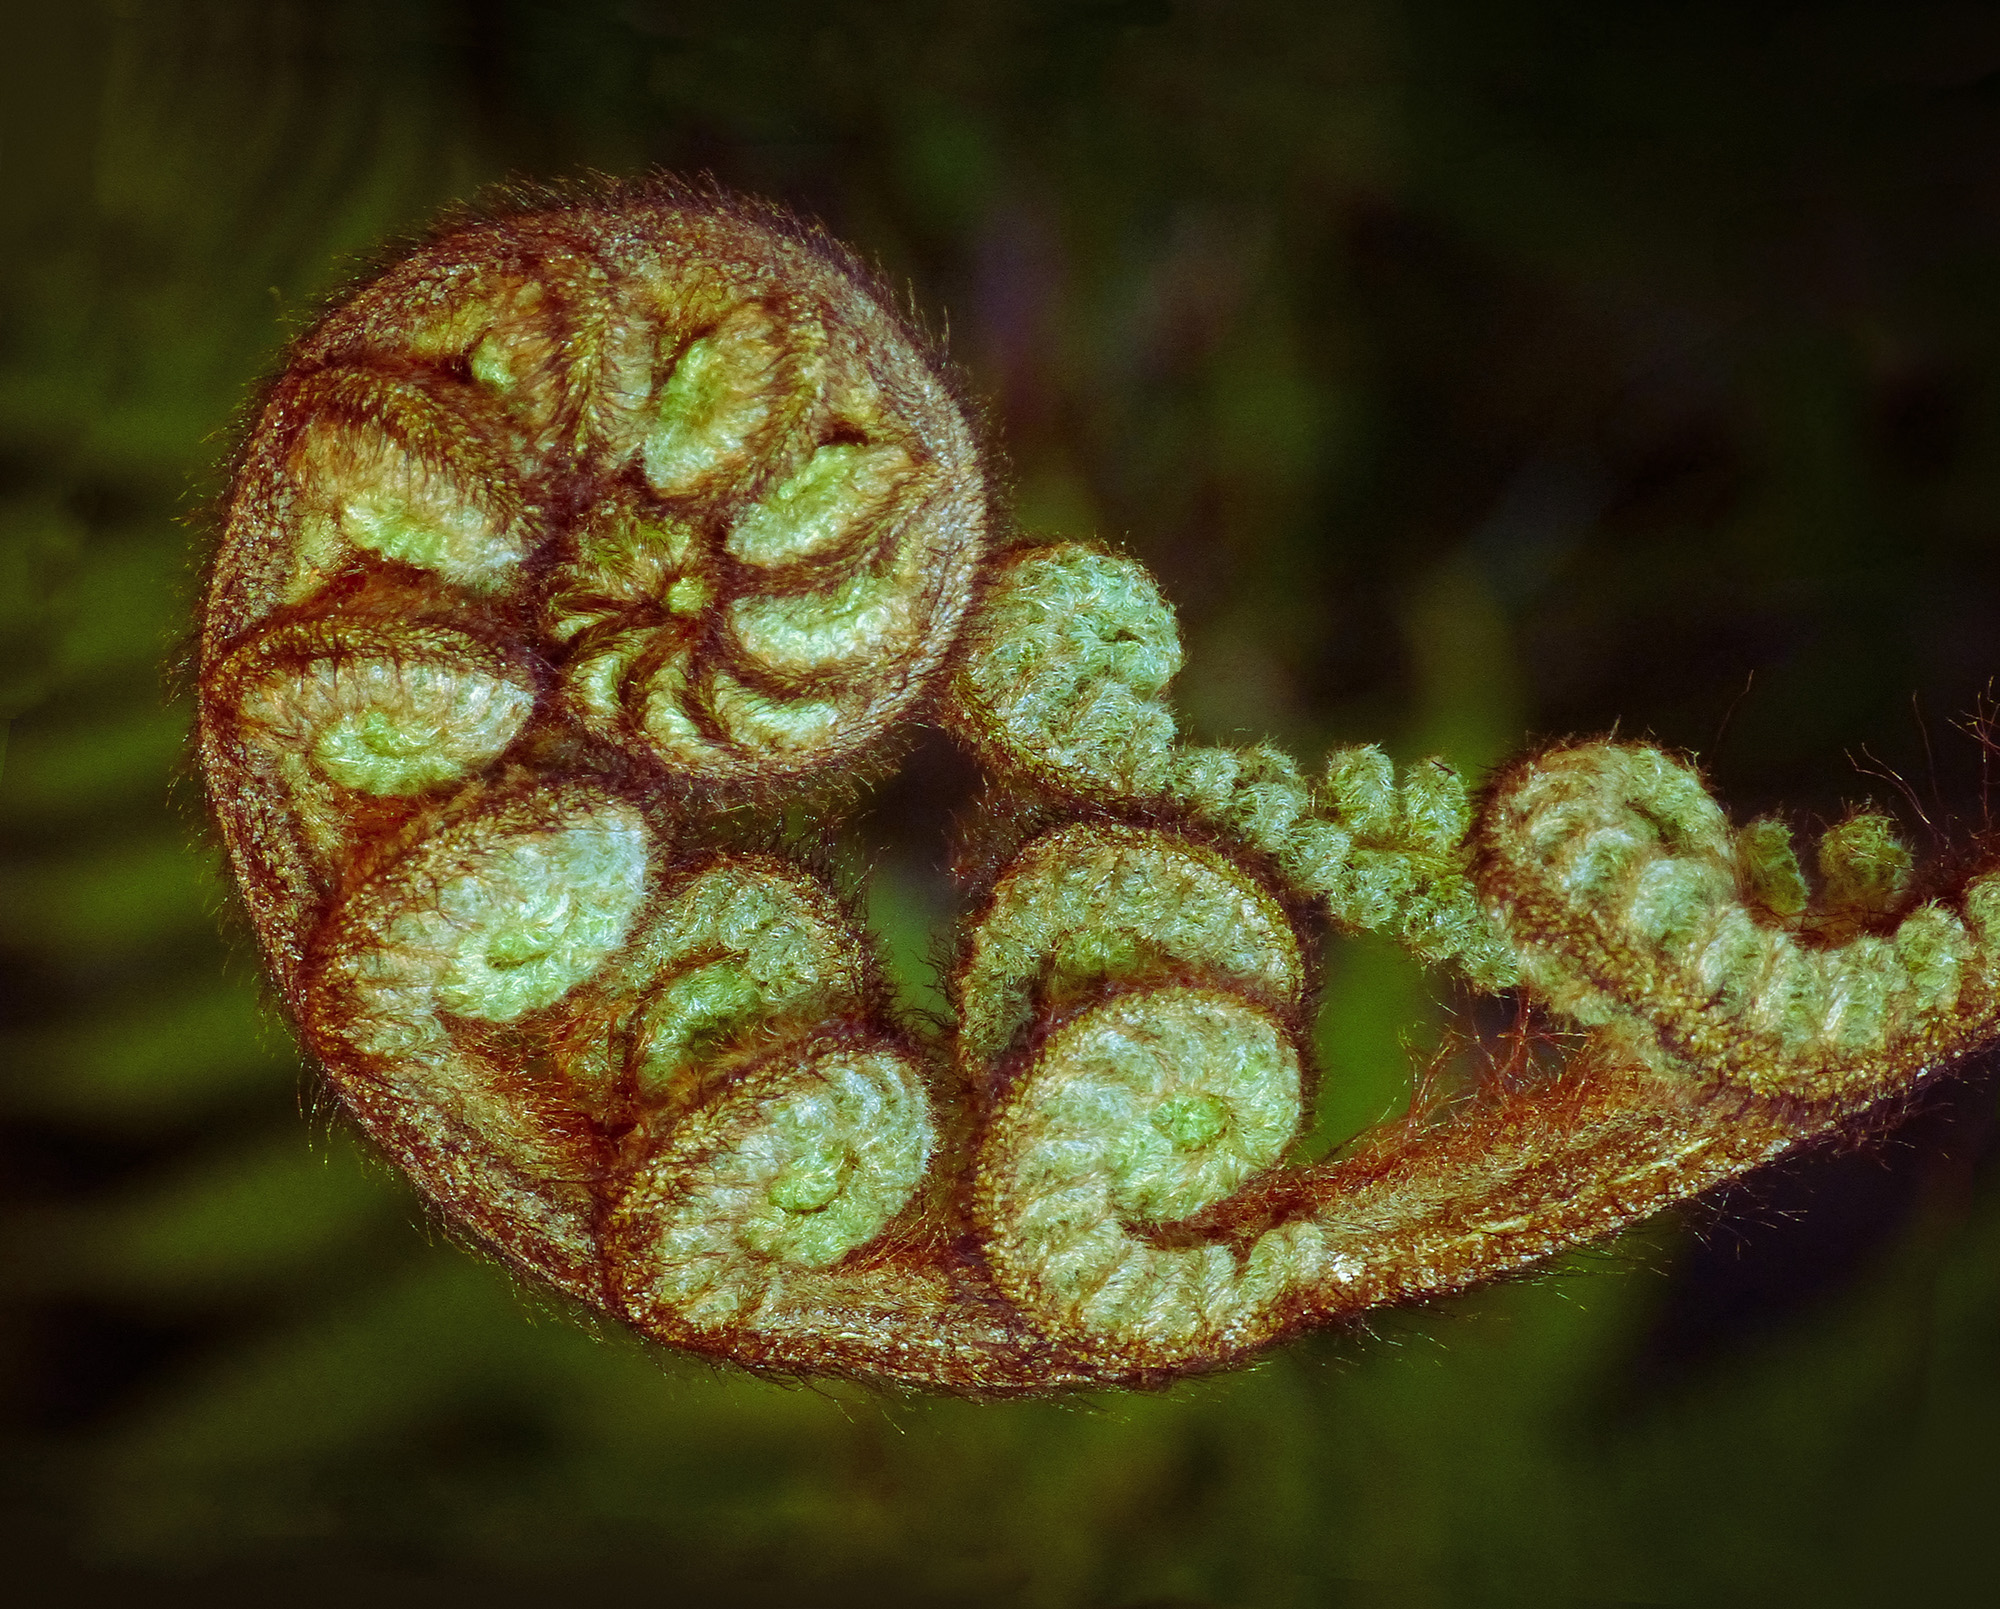 Silver fern frond aka Koru - Photo by Sid Mosdell (sidm on Flickr)